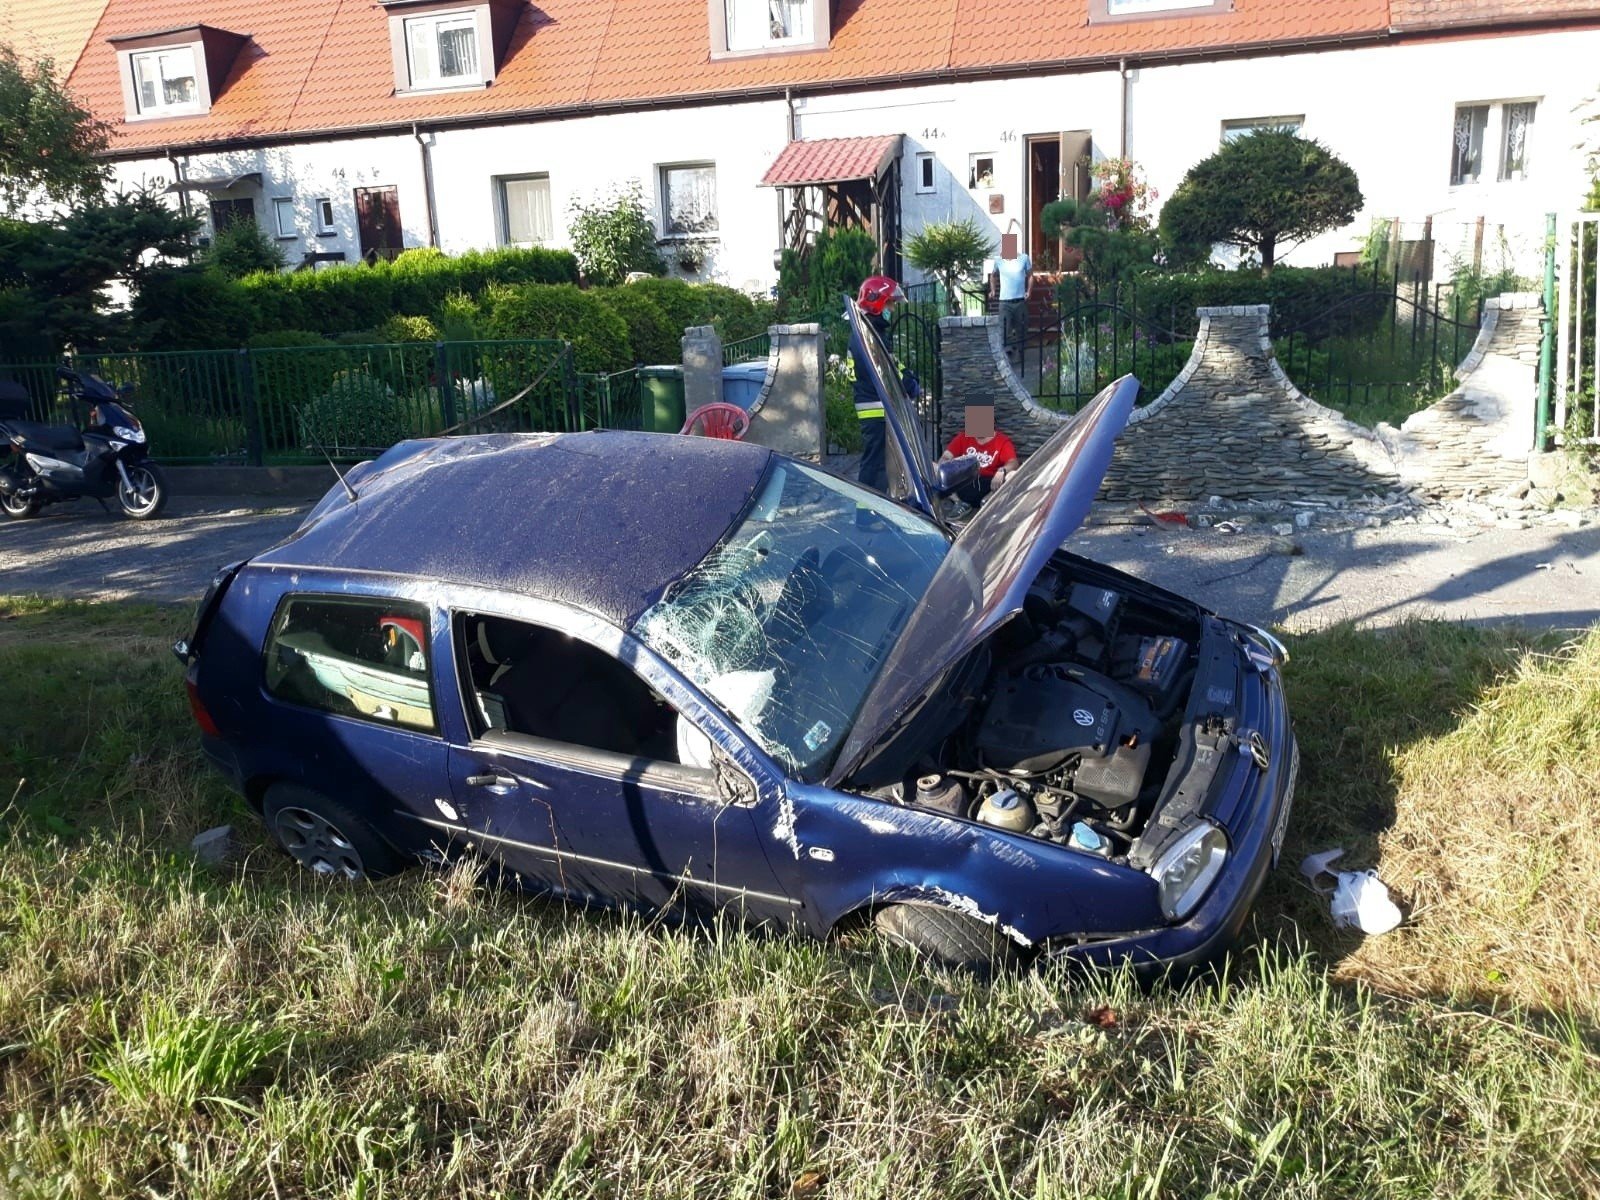 Groźny Wypadek Na Maślickiej Przy Aow. Auto Dachowało I Uderzyło W Płot Posesji (Zdjęcia) | Gazeta Wrocławska